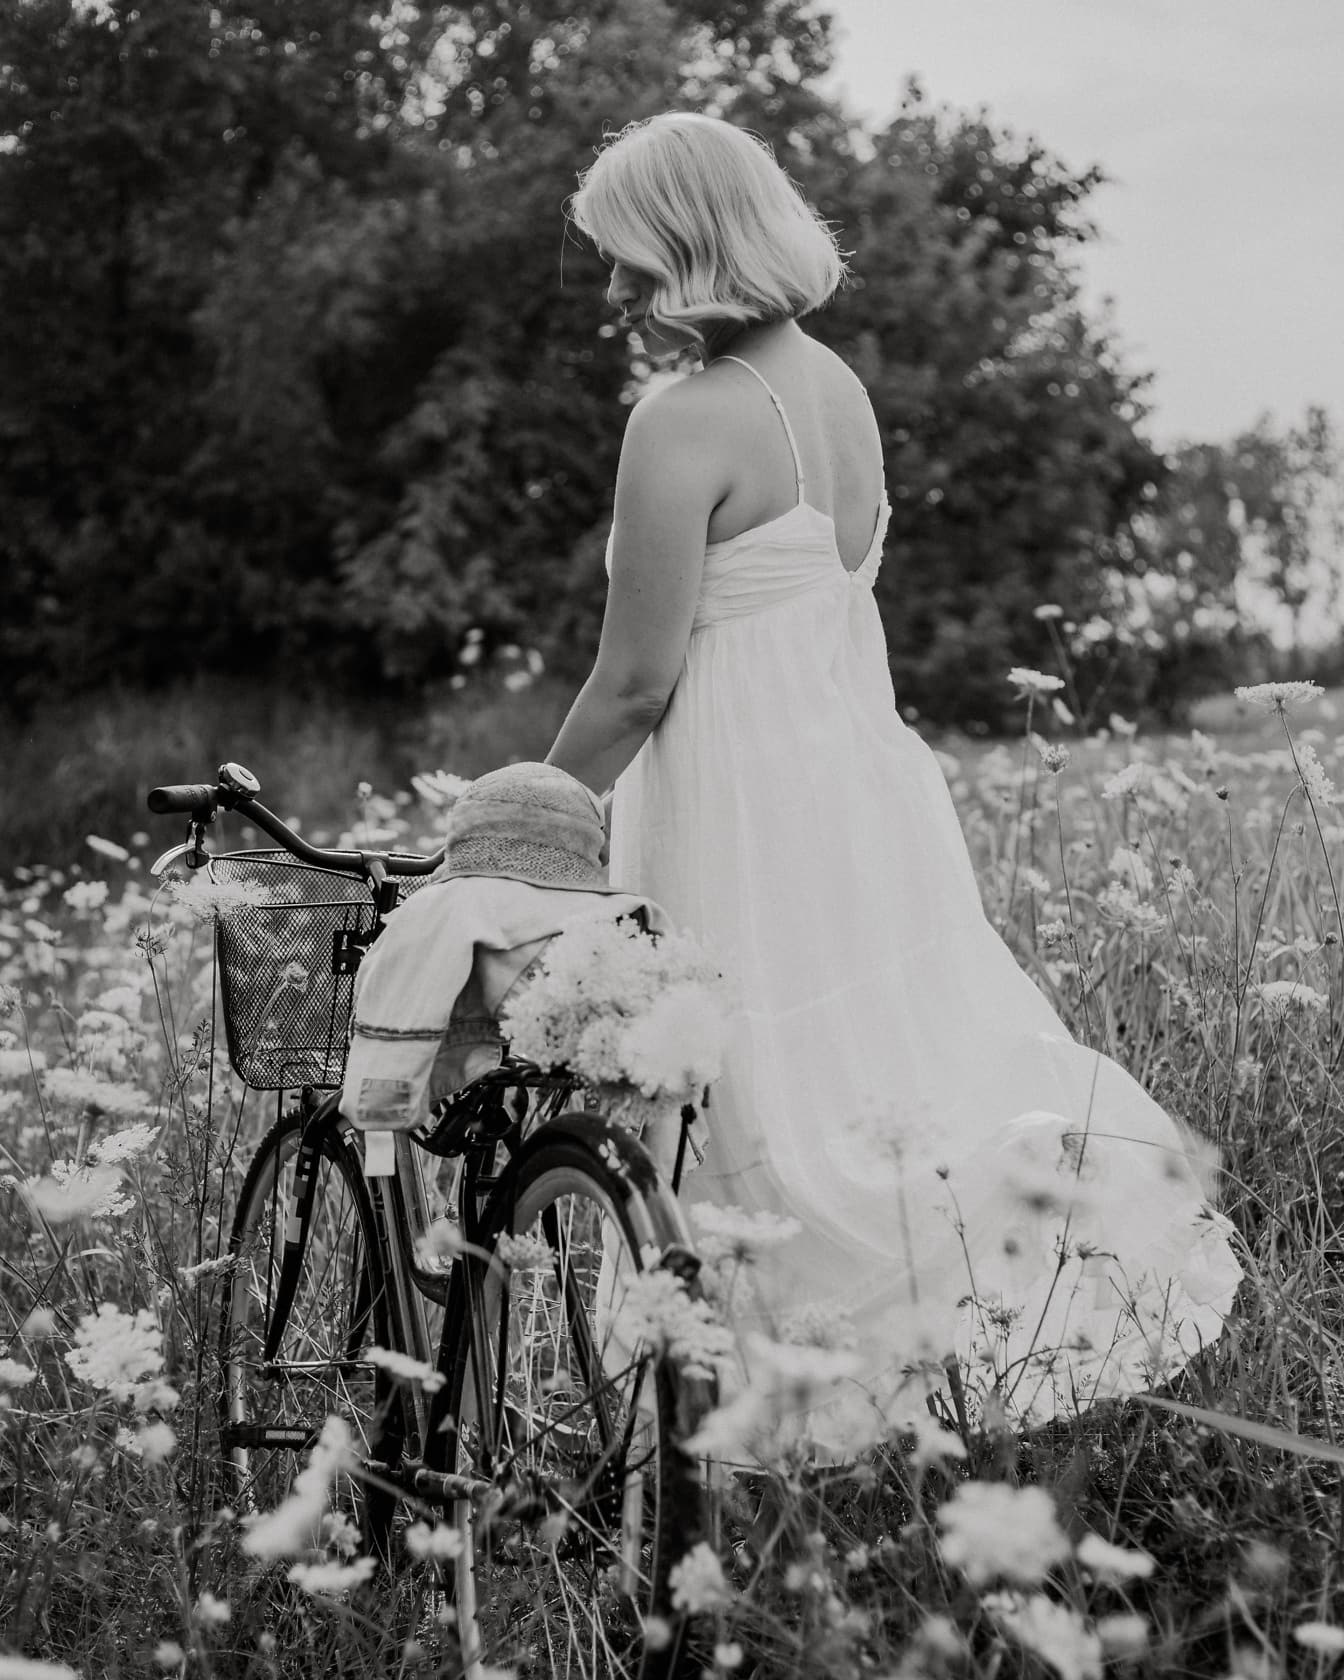 Cô dâu đồng quê trong chiếc váy dân gian màu trắng không có lưng với chiếc xe đạp trên cánh đồng hoa, ảnh đen trắng